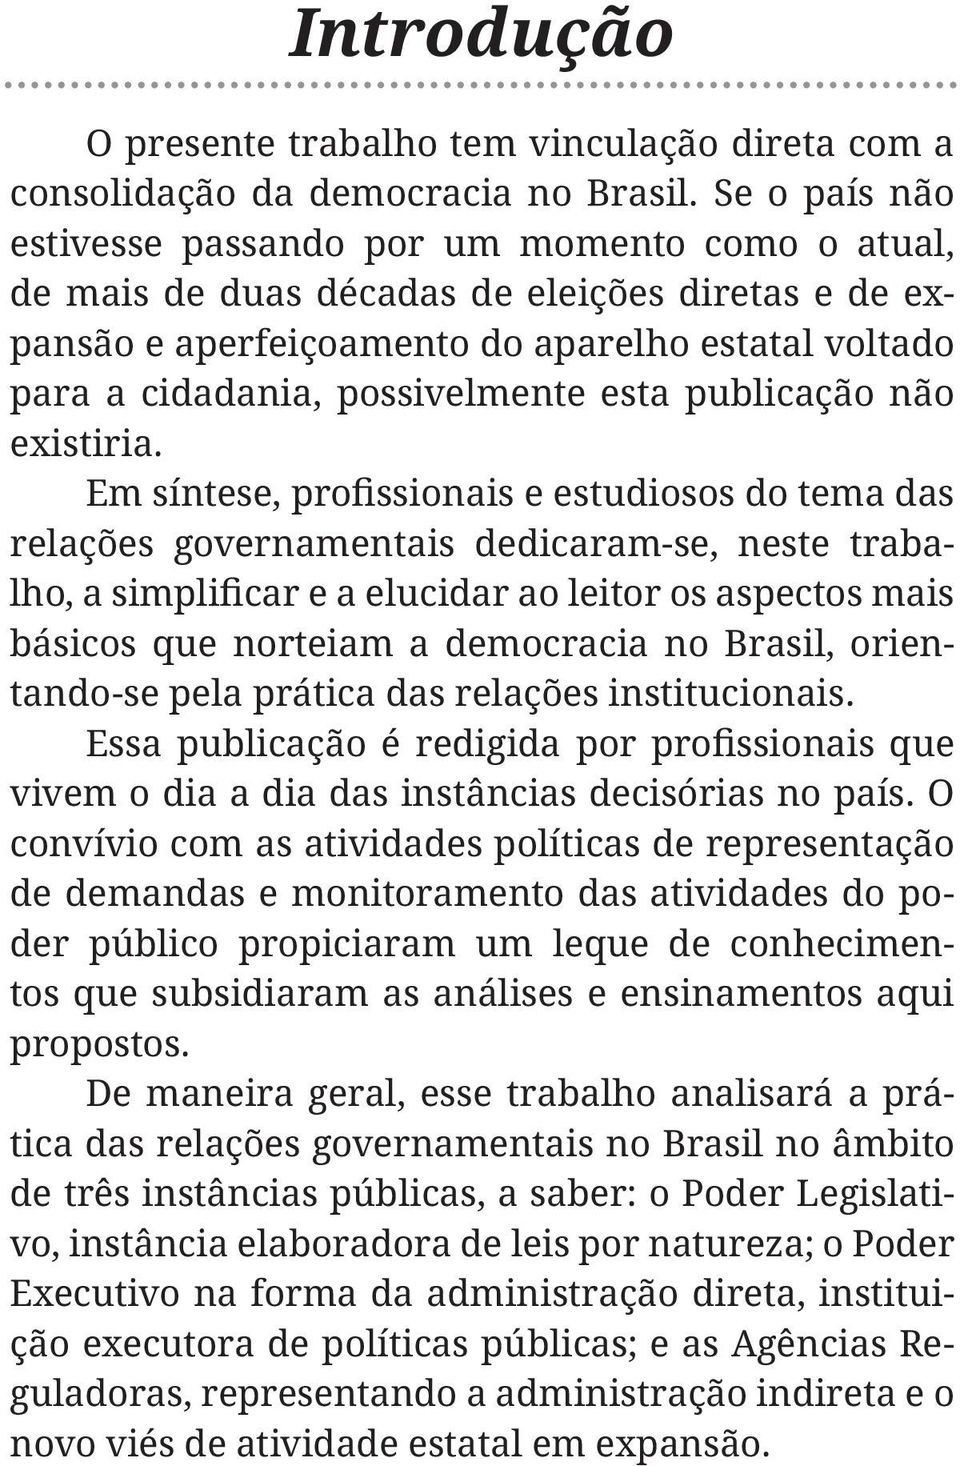 esta publicação não existiria. relações governamentais dedicaram-se, neste traba- básicos que norteiam a democracia no Brasil, orientando-se pela prática das relações institucionais.